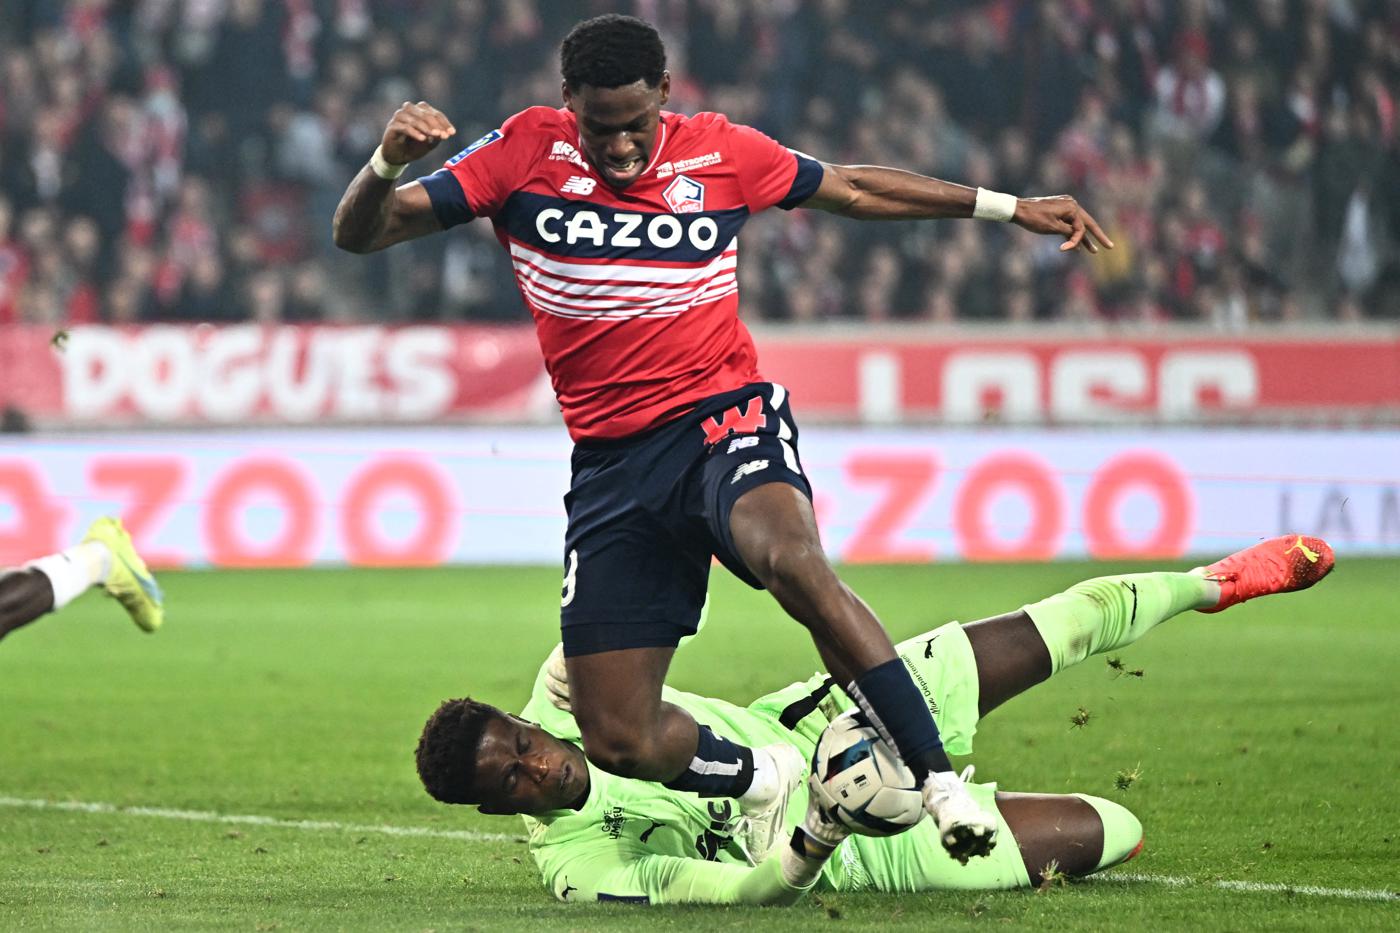 Lance v Lille - 1-1. Mistrzostwa Francji, runda 26. Przegląd meczu, statystyki.